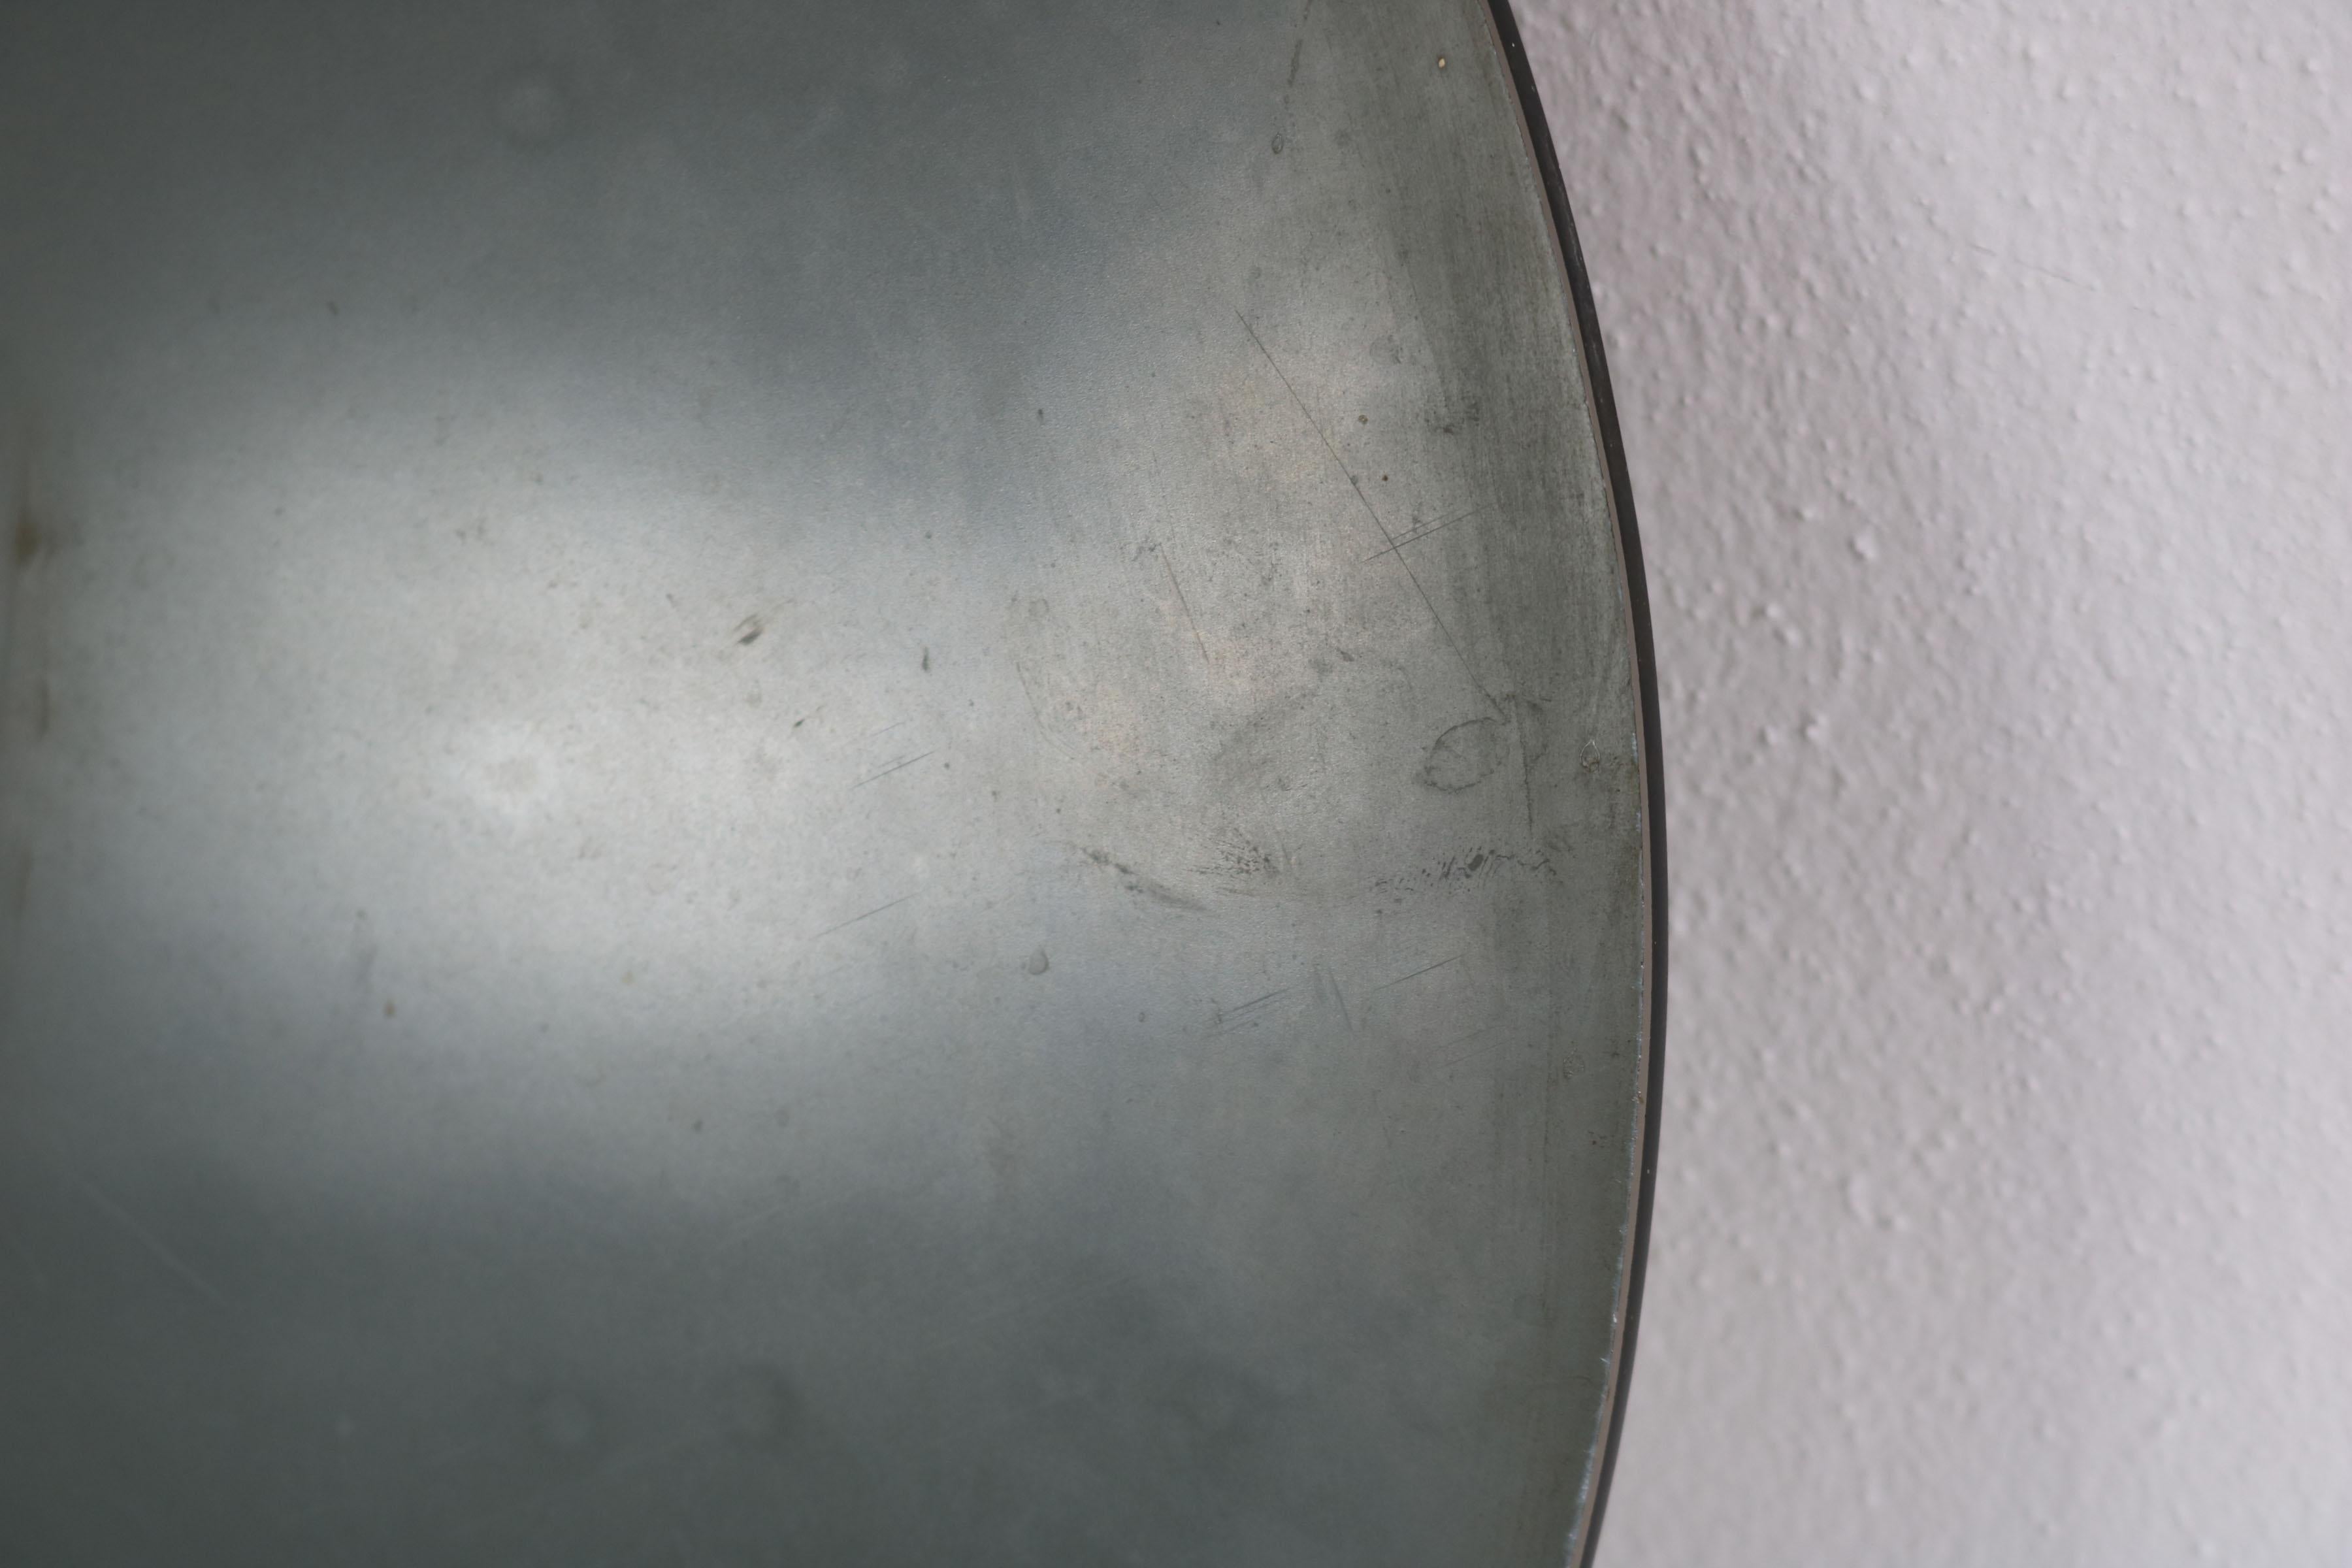 Round Italian Twotone Mirror, Design: Antonio Lupi by Cristal Luxor, 1960s For Sale 6